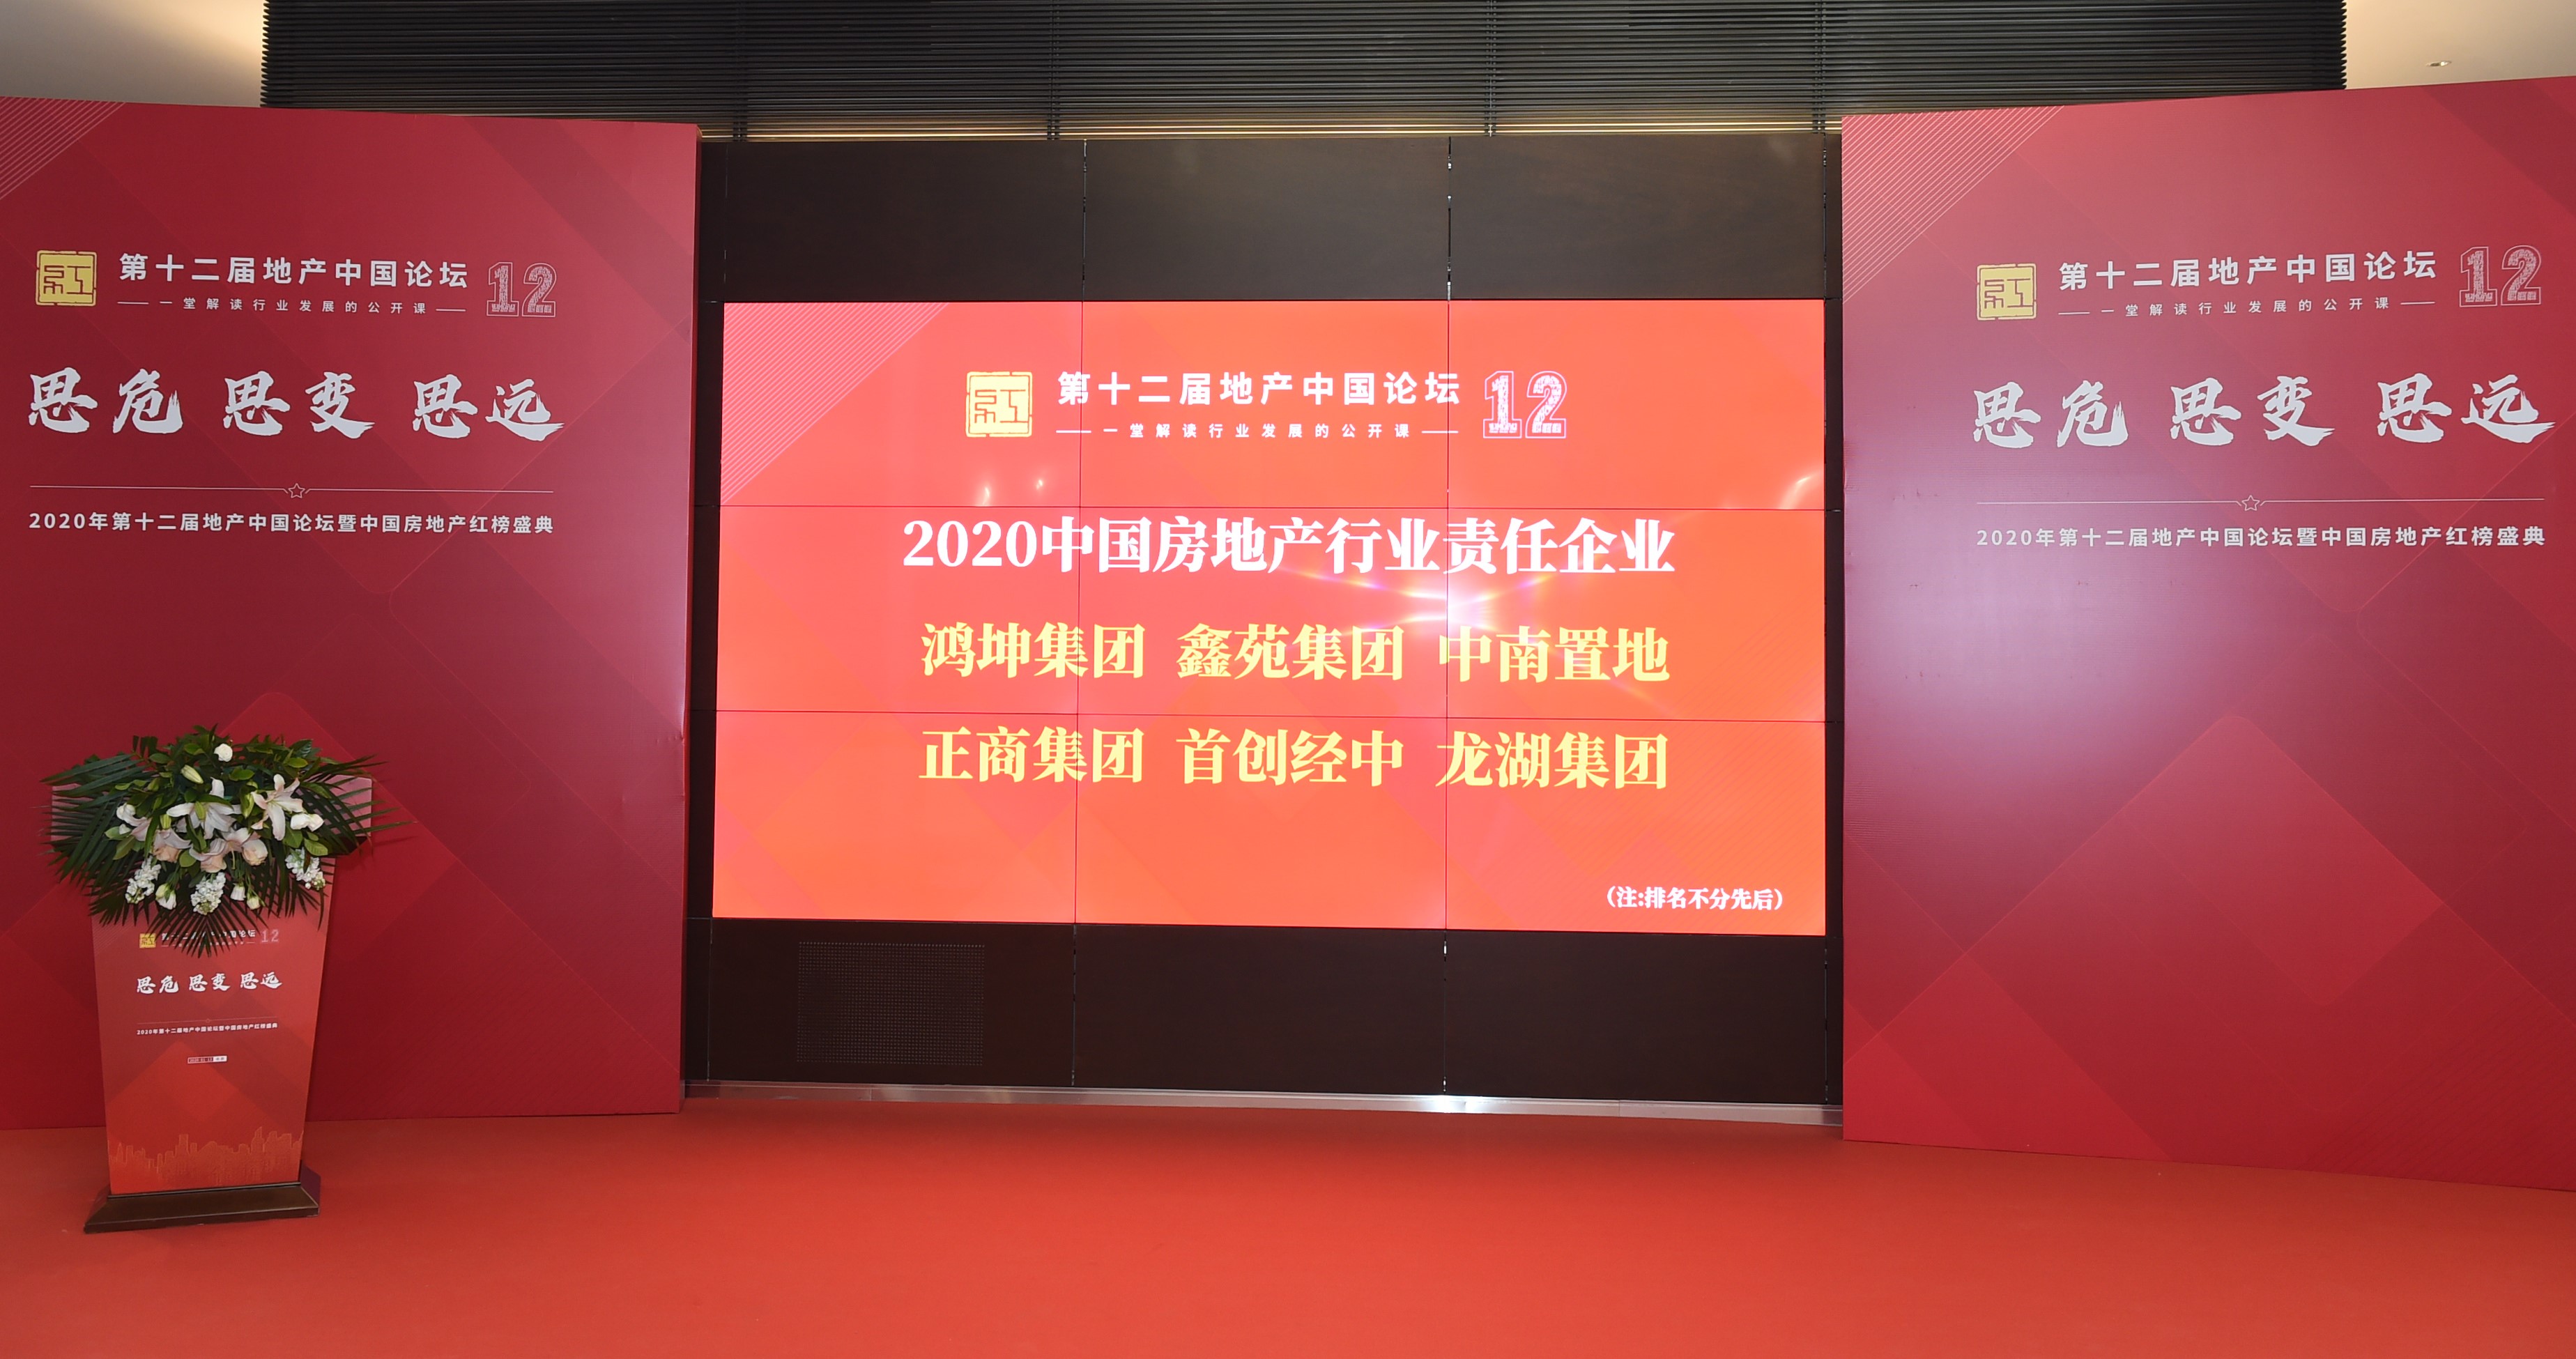 積極踐行社會責任 多家房企榮膺“2020中國房地産行業責任企業”-中國網地産